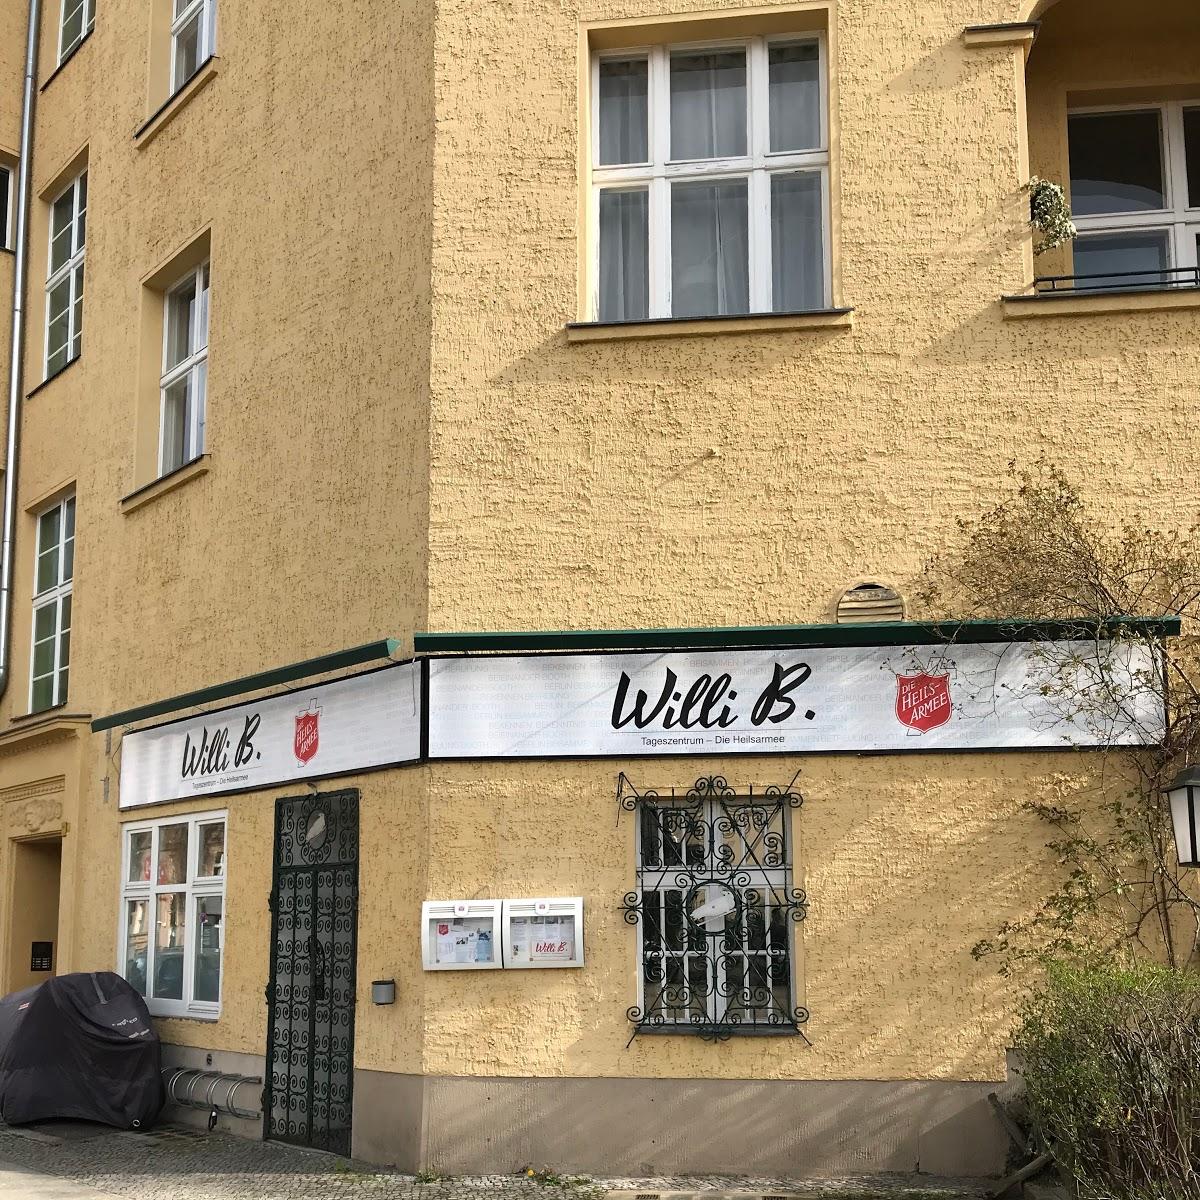 Restaurant "Willy B." in  Erfurt